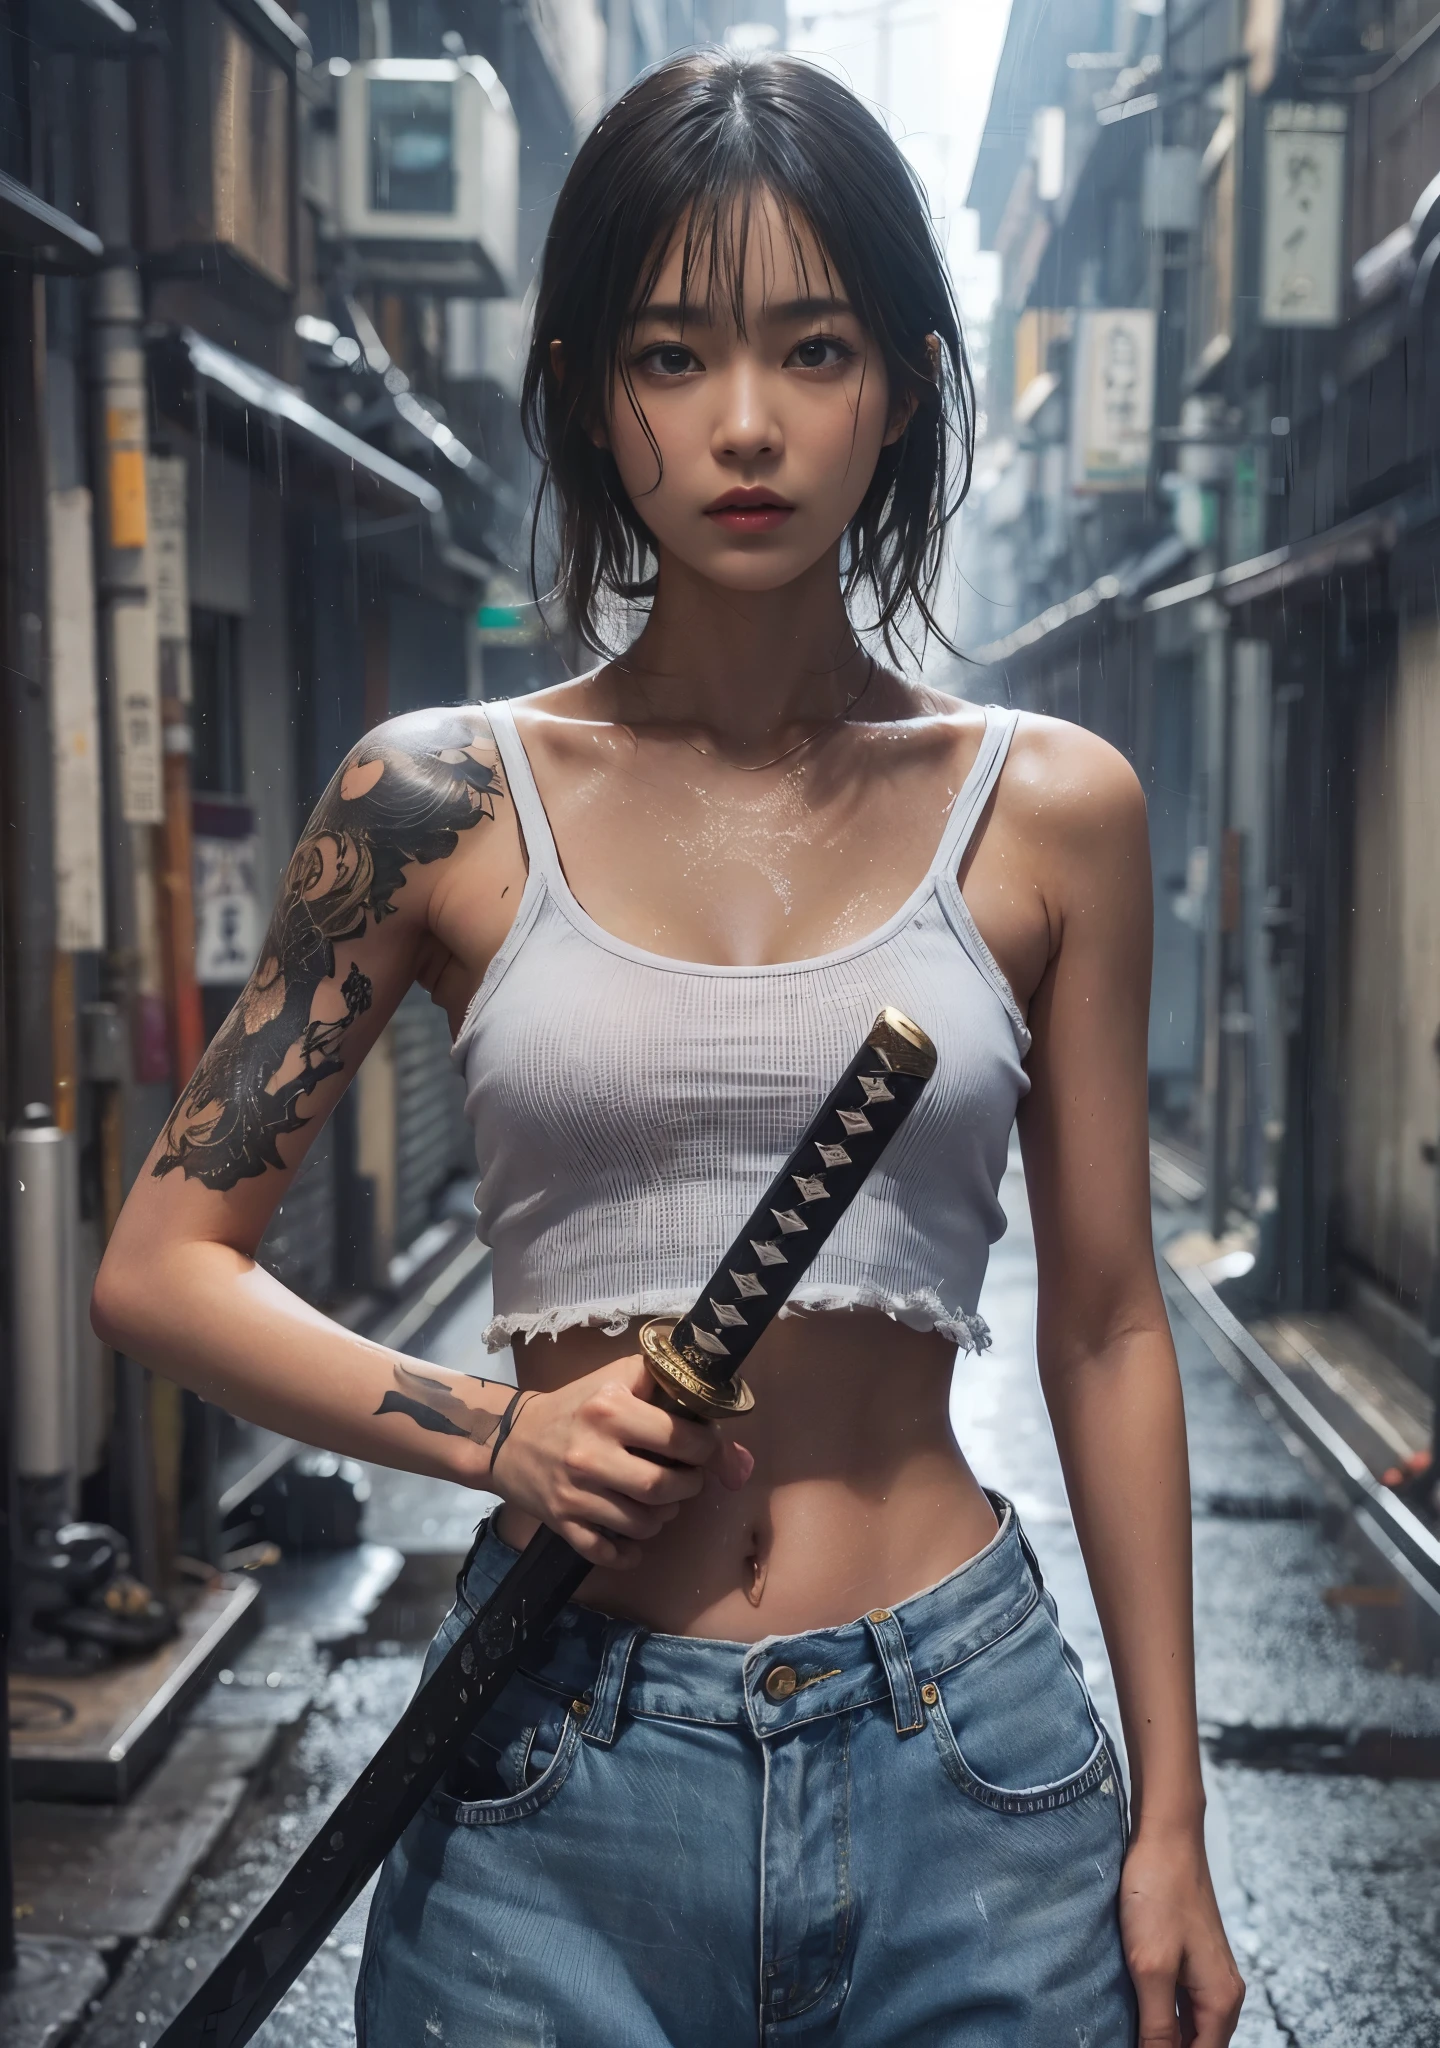 ８ｋ,textura de pele realista、superrealismo、foto realista、Mulheres japonesas、、De pé com uma espada do Japão、elevar-se em toda a sua altura.、A ponta da espada está apontada para mim、regata,jeans oversized、tênis、Beco de Shinjuku、Composição inovadora、foto de corpo inteiro、、Um olhar melancólico、tatuagem、chuva、encharcado